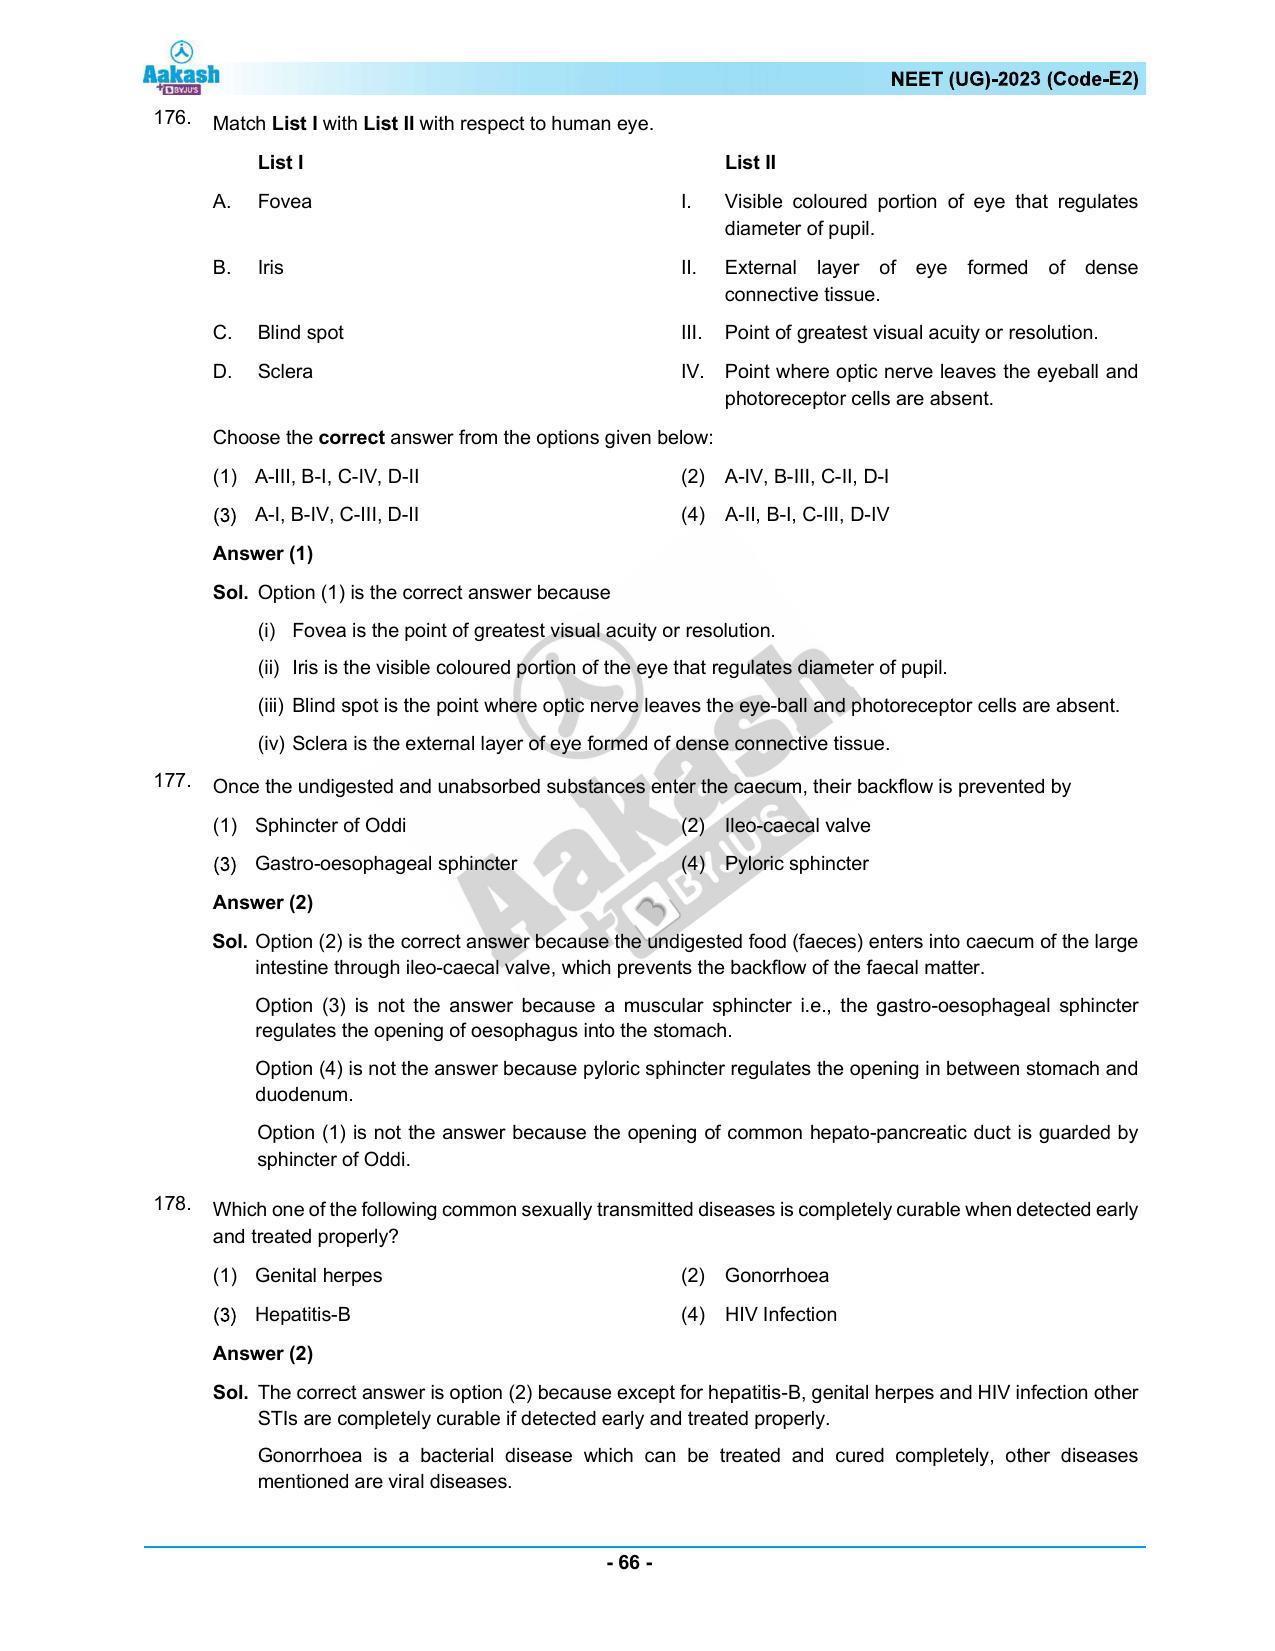 NEET 2023 Question Paper E2 - Page 66